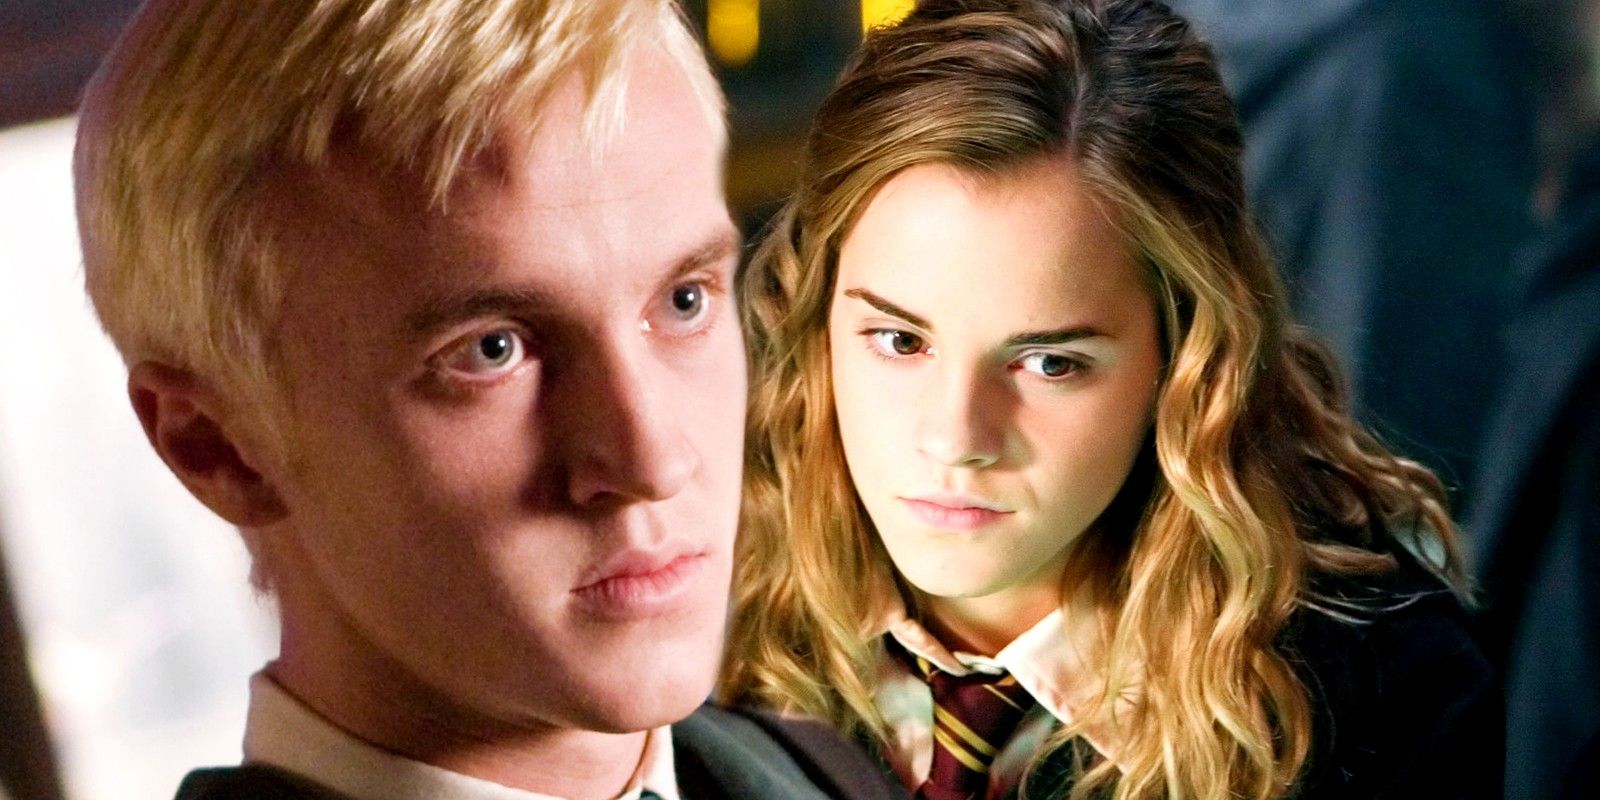 El arte épico de Harry Potter imagina si Hermione Granger y Draco Malfoy fueran pareja